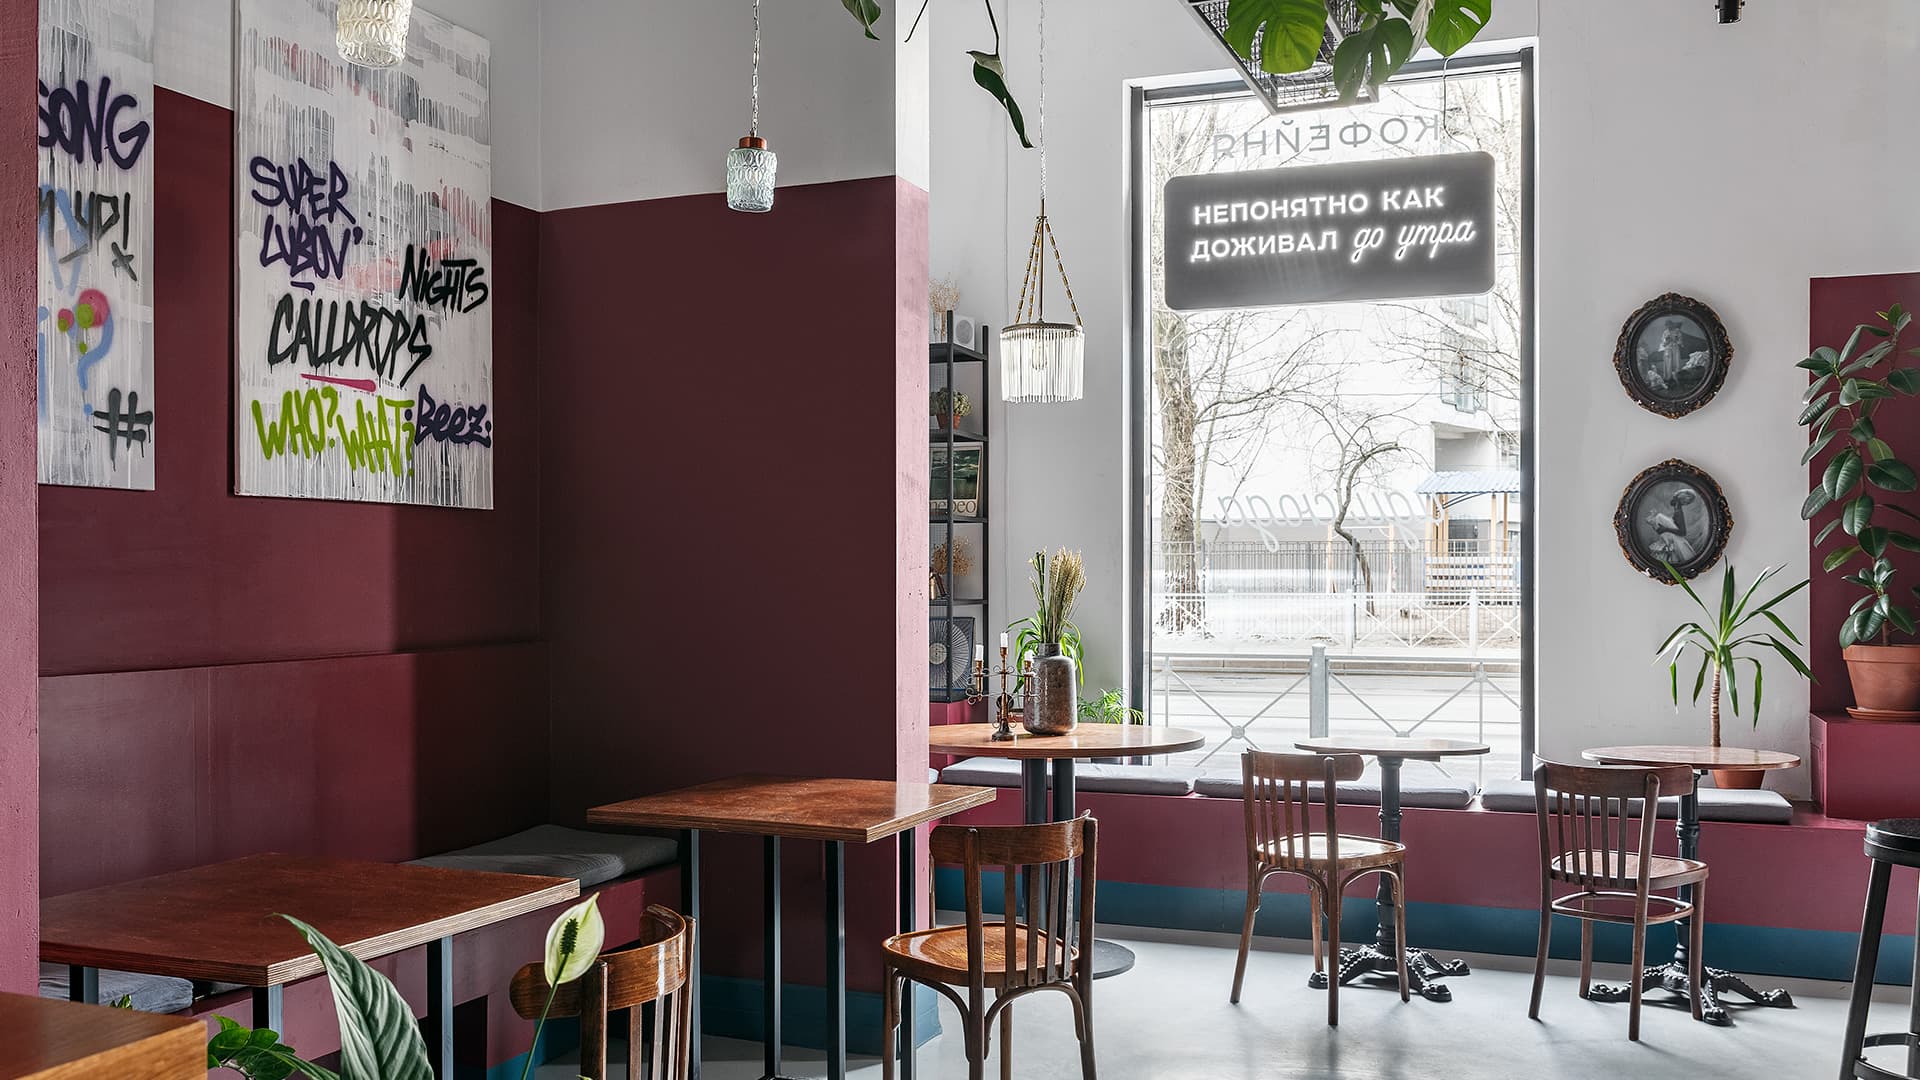 Кофейня с граффити и антикварным декором – проект дизайнера Инги Харисовой